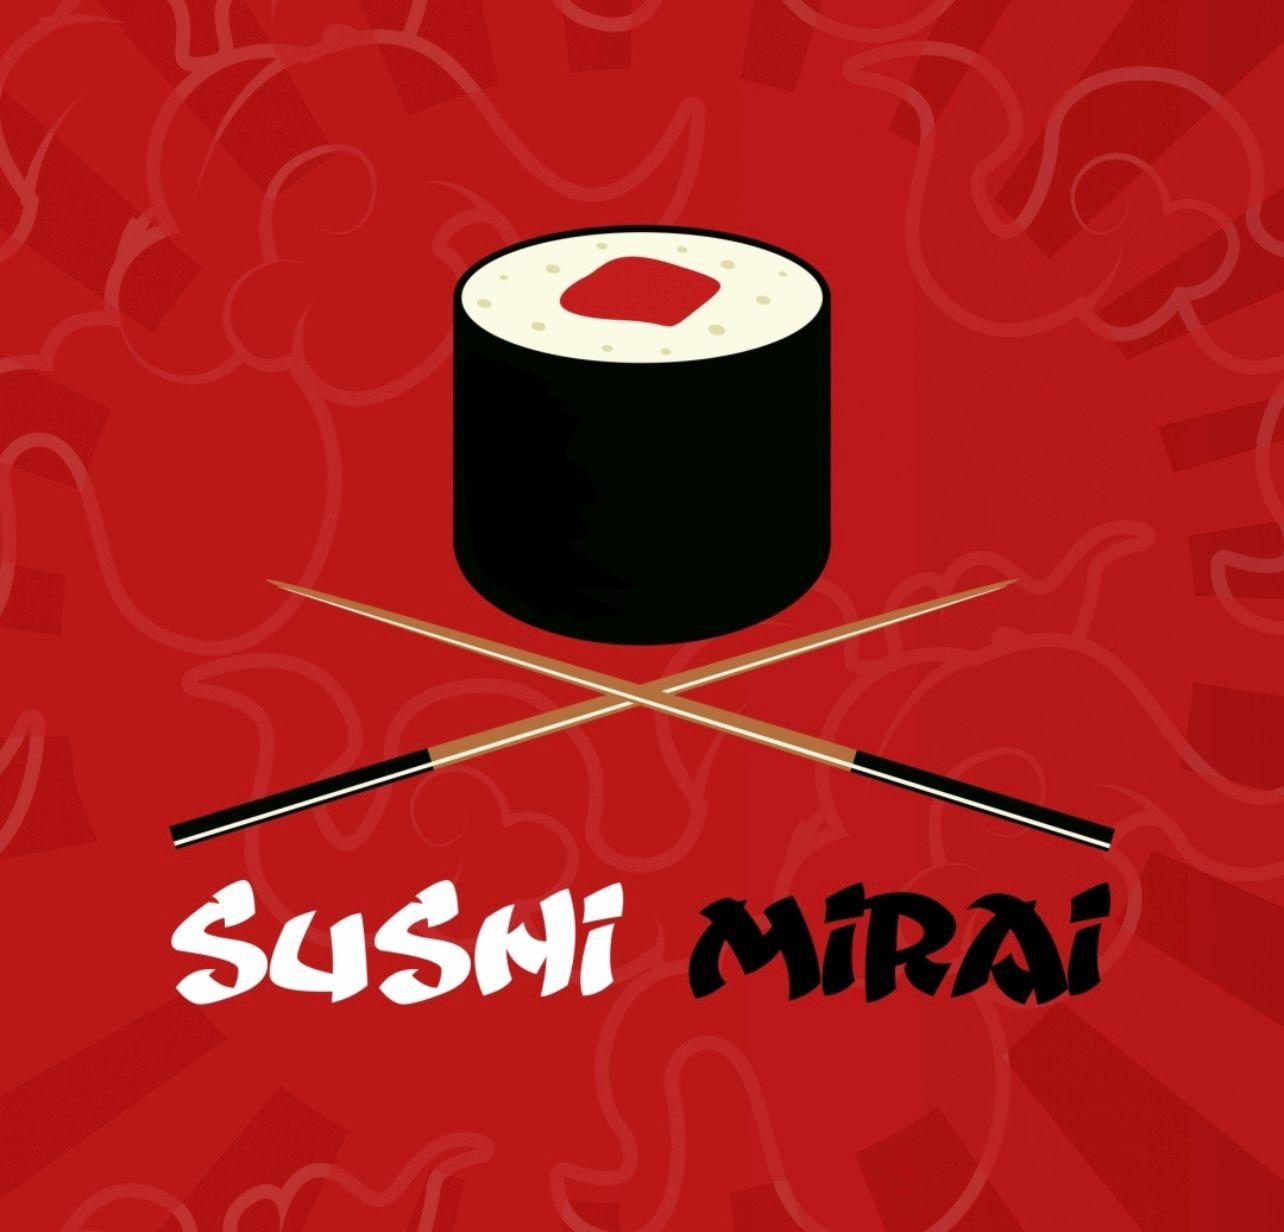 Sushi mirai